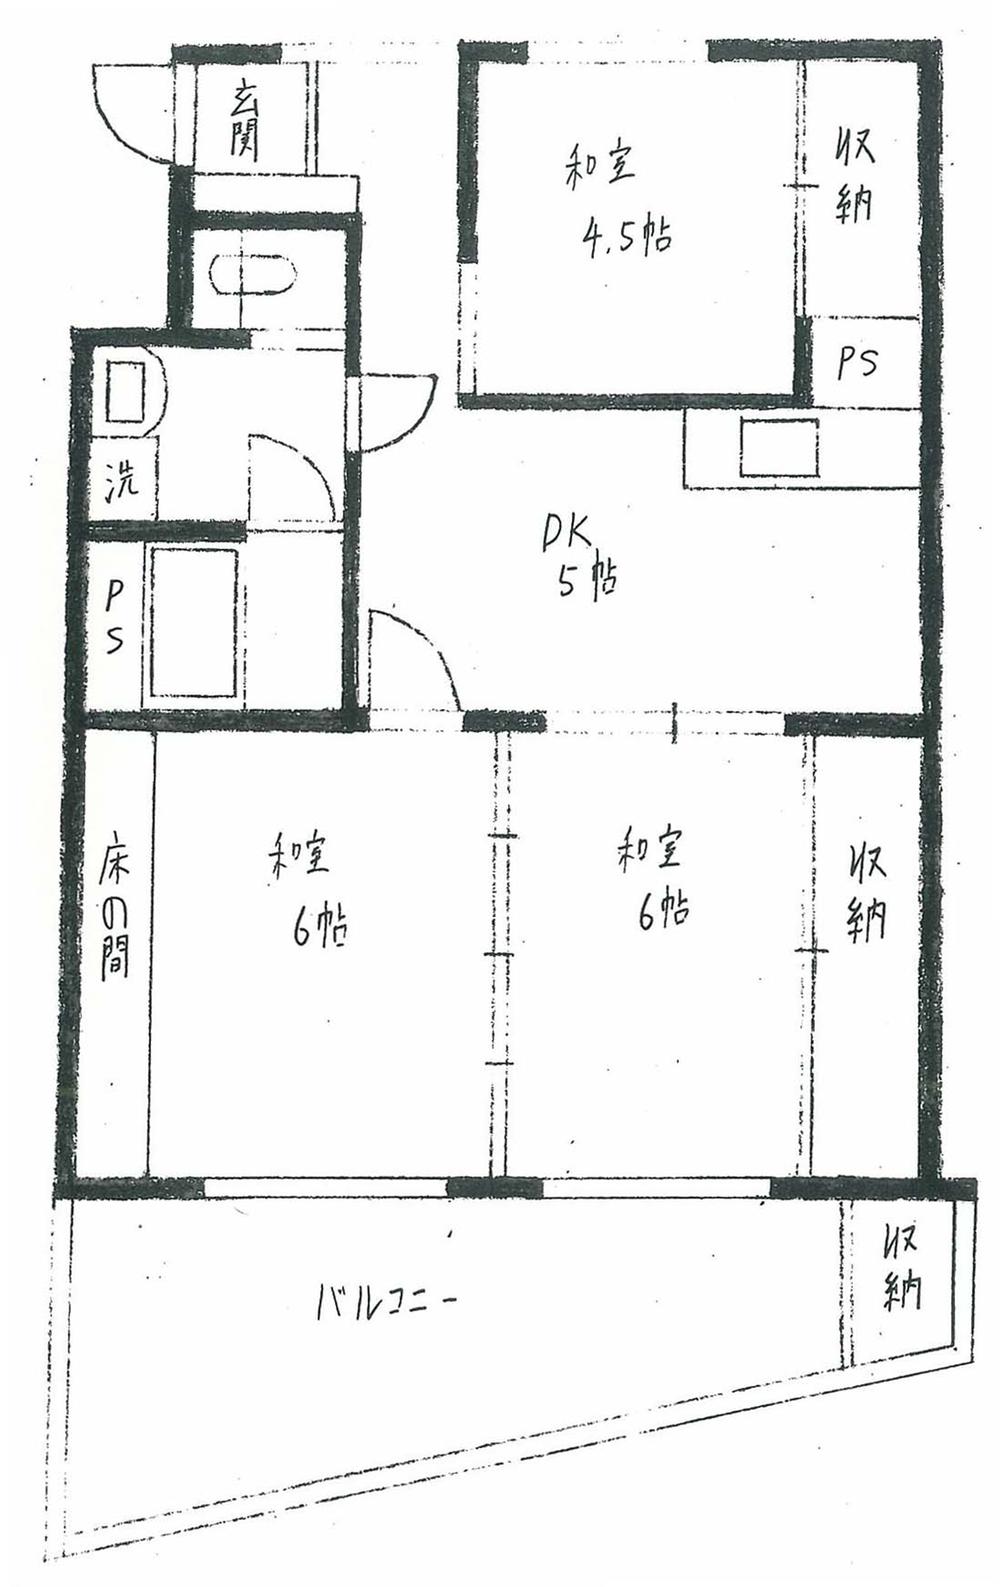 Floor plan. 3DK, Price 3 million yen, Occupied area 53.16 sq m